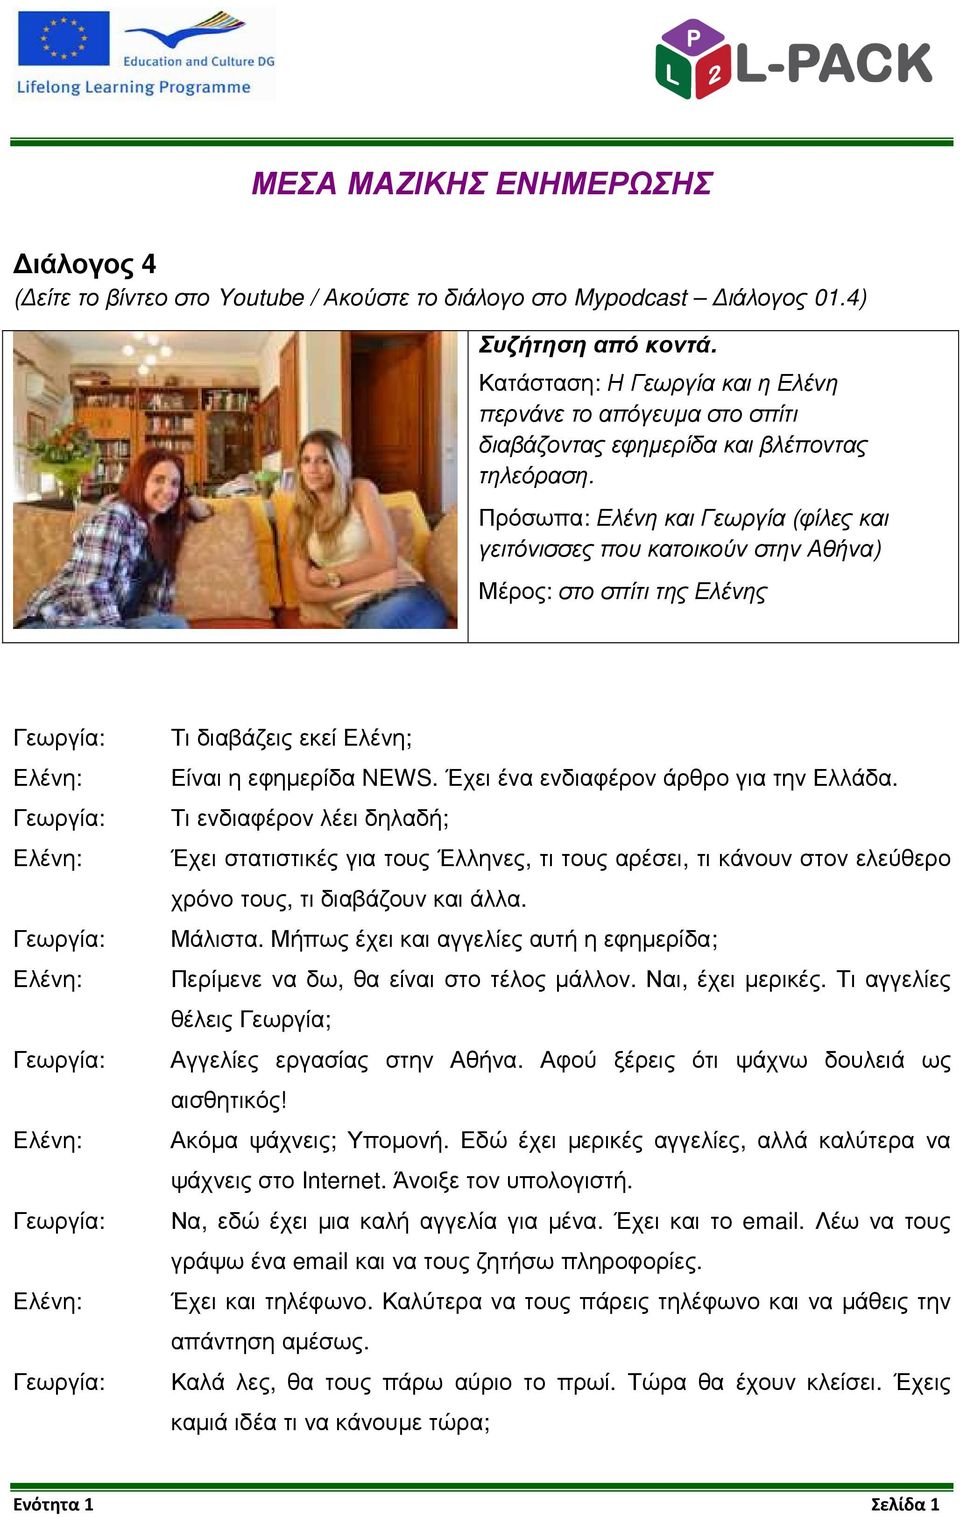 Πρόσωπα: Ελένη και Γεωργία (φίλες και γειτόνισσες που κατοικούν στην Αθήνα) Μέρος: στο σπίτι της Ελένης Τι διαβάζεις εκεί Ελένη; Είναι η εφηµερίδα NEWS. Έχει ένα ενδιαφέρον άρθρο για την Ελλάδα.